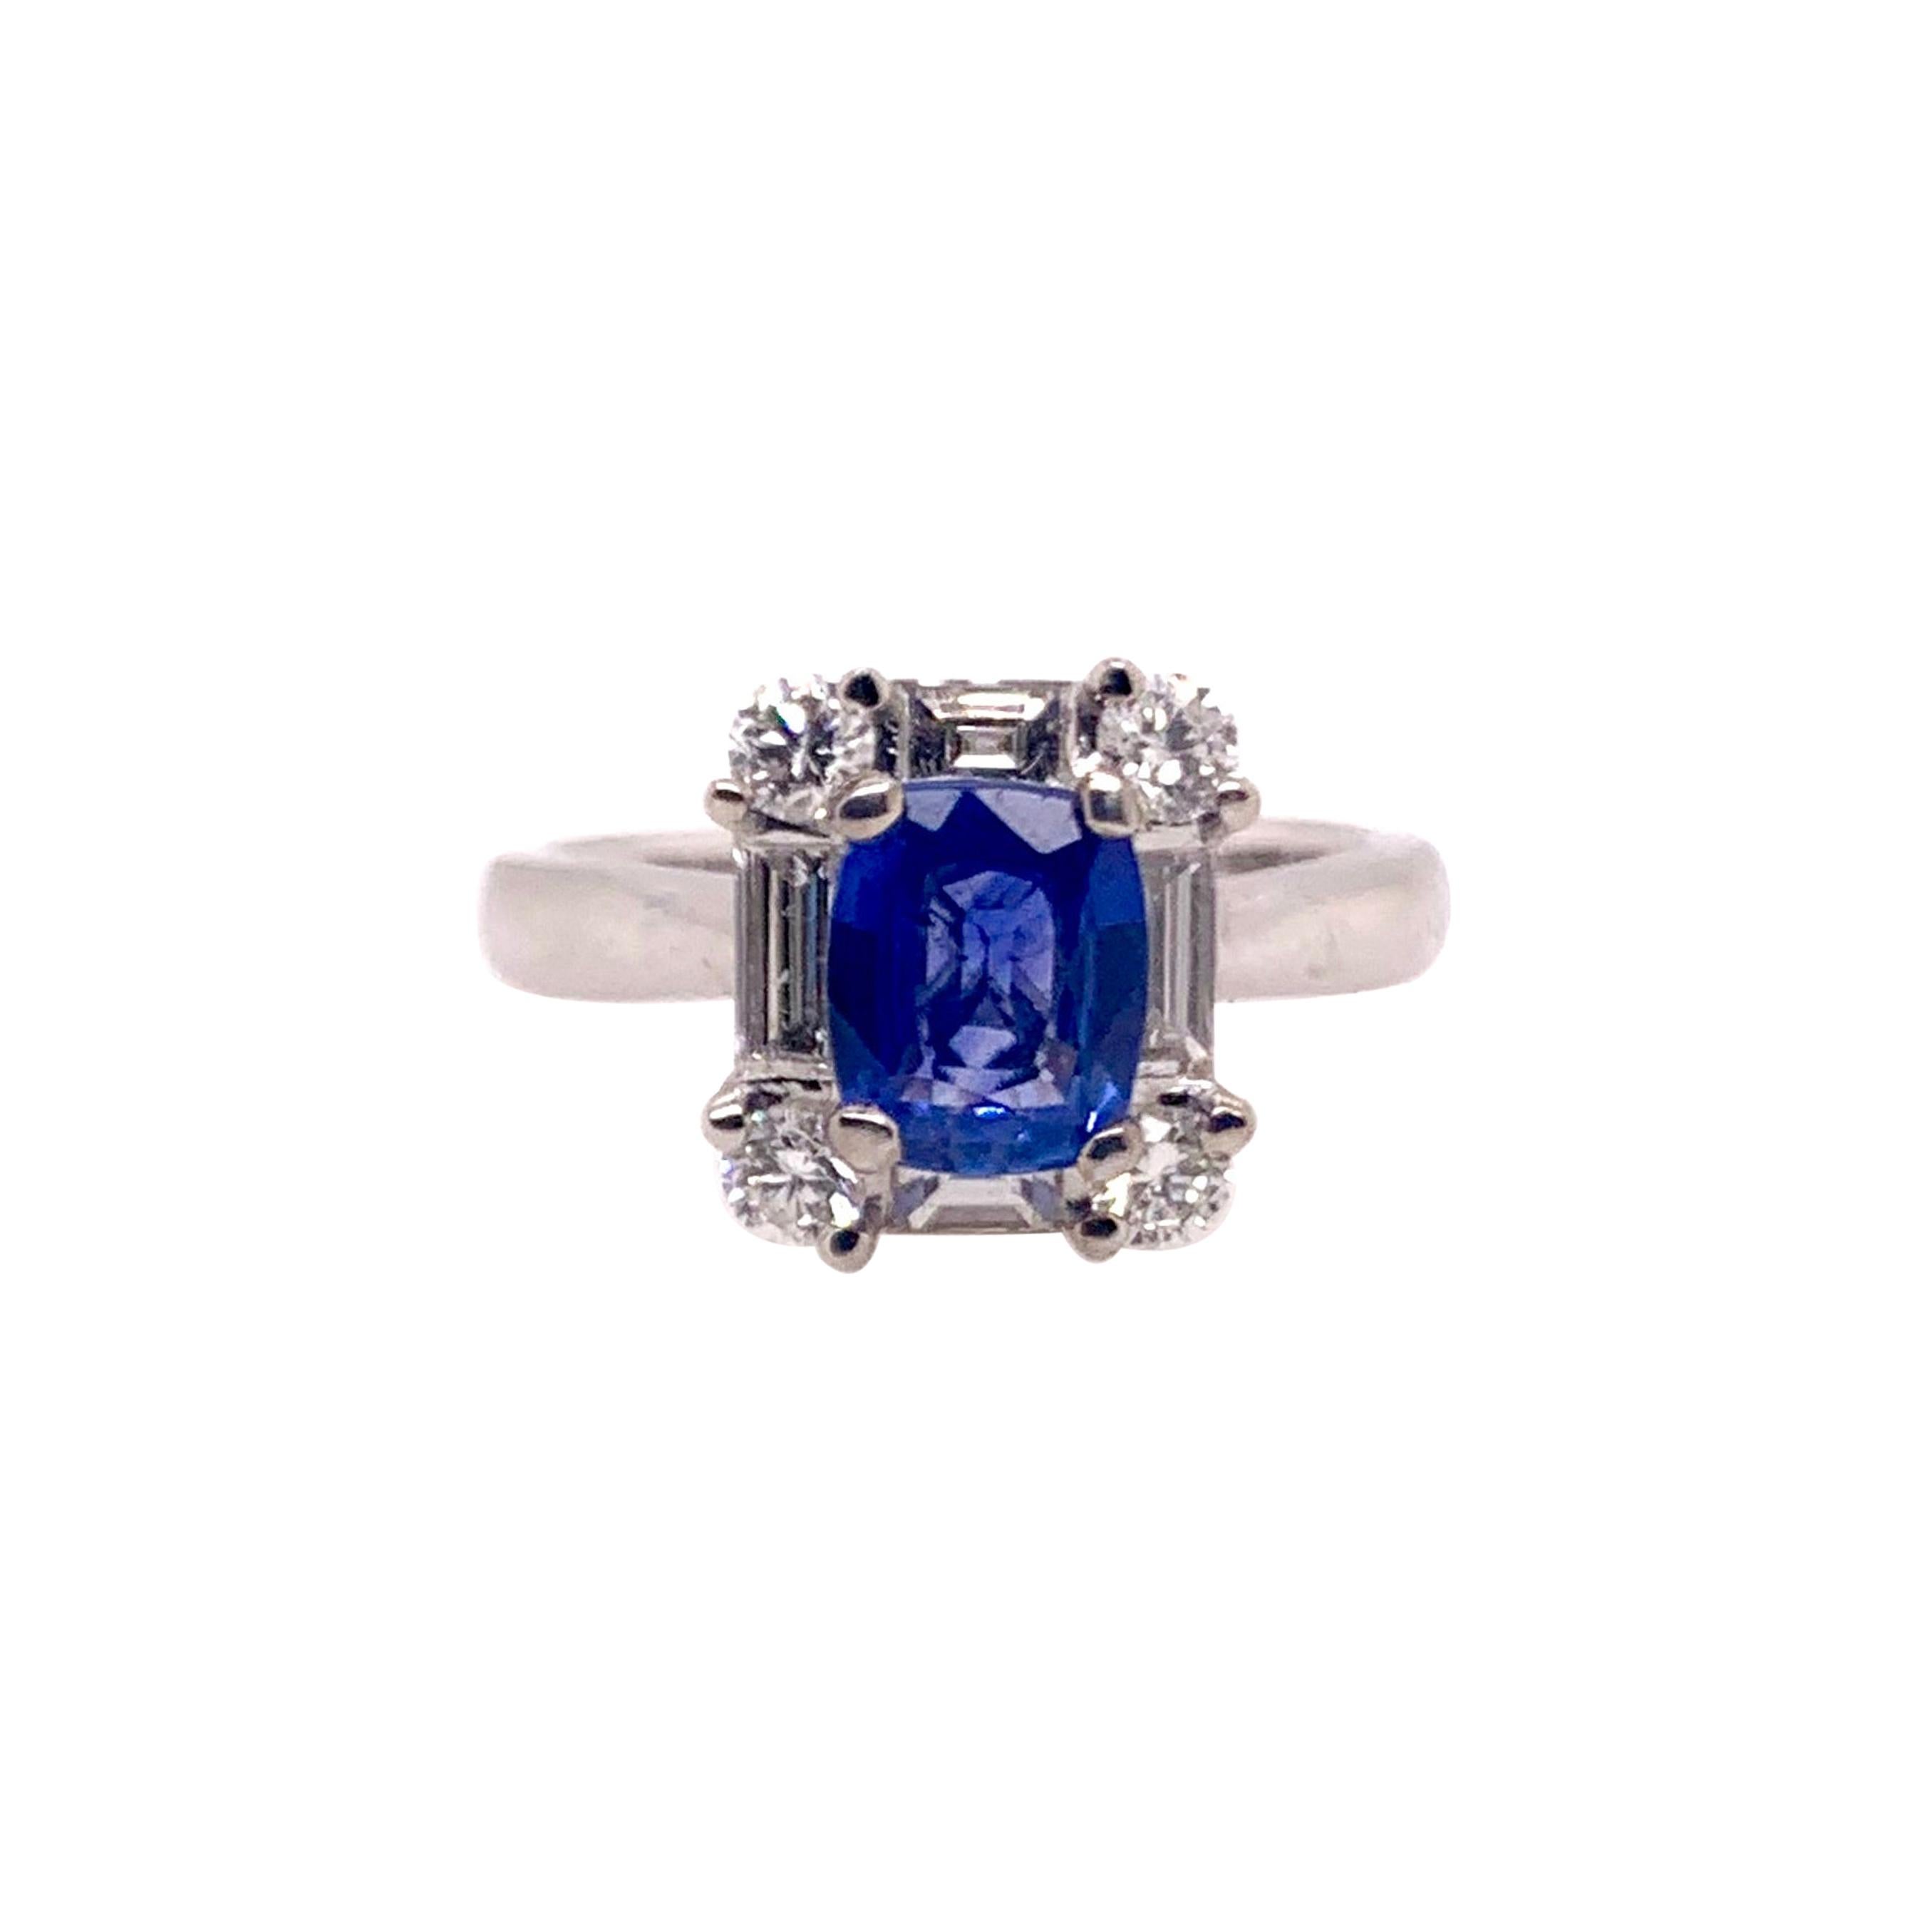 Velvet Blue Sapphire Diamond Ring in 18k White Gold